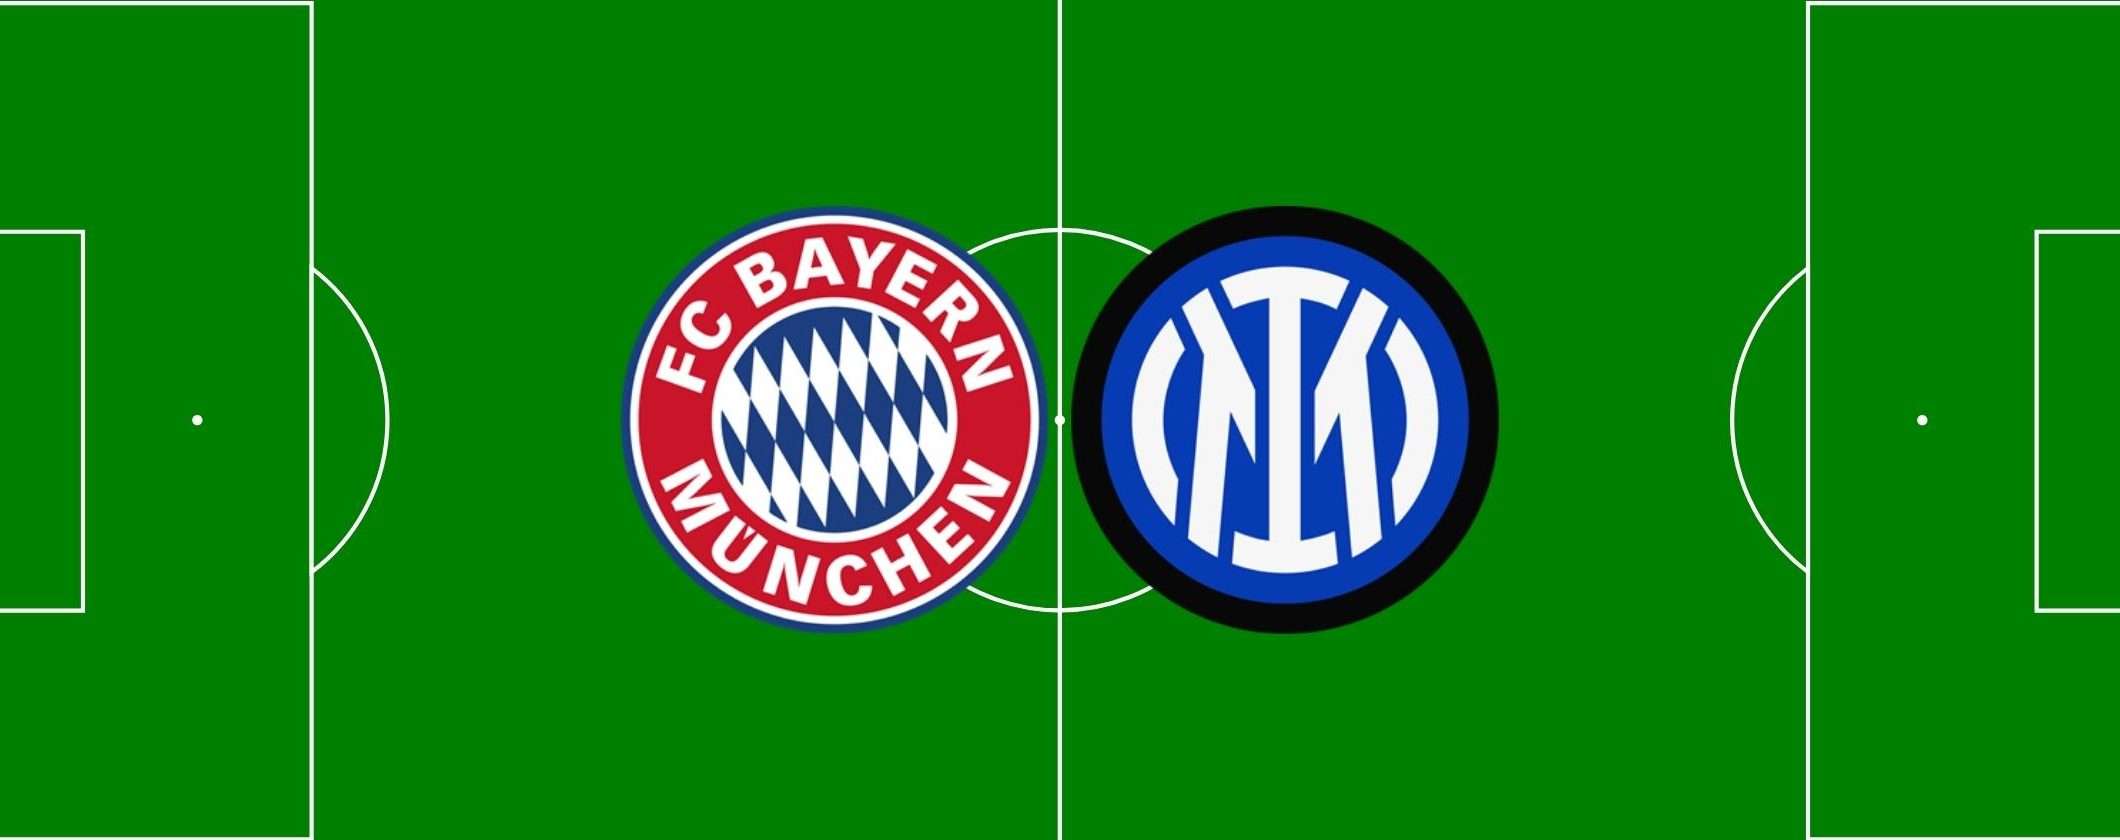 Come vedere Bayern Monaco-Inter in streaming dall'estero